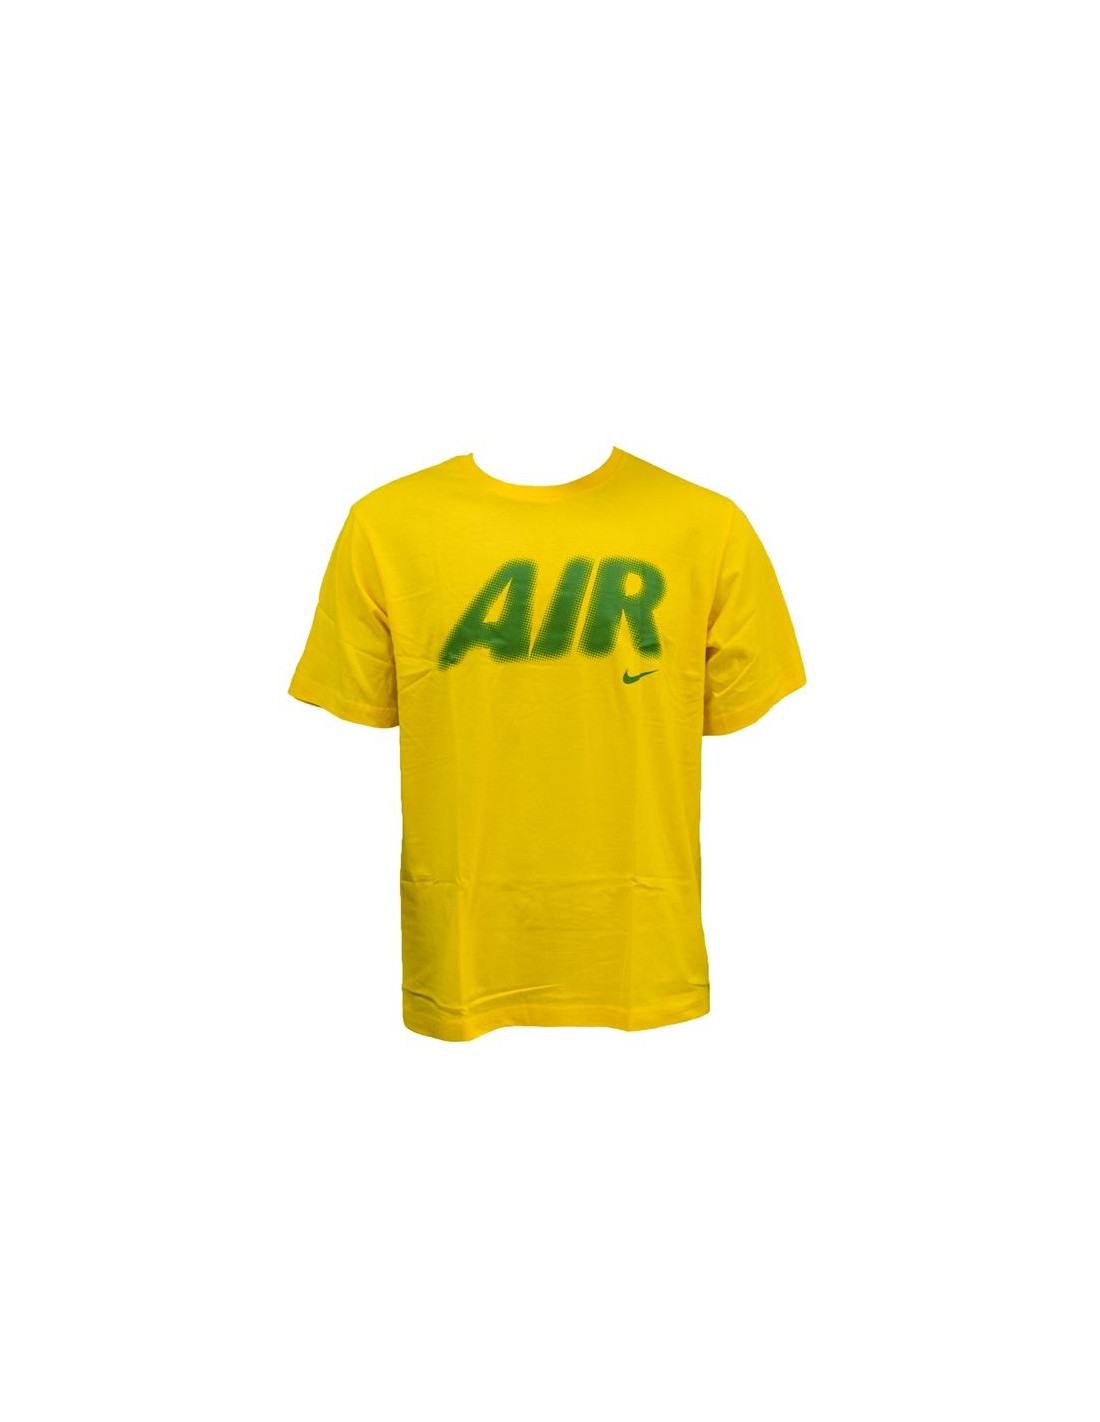 Camiseta nike air amarillo